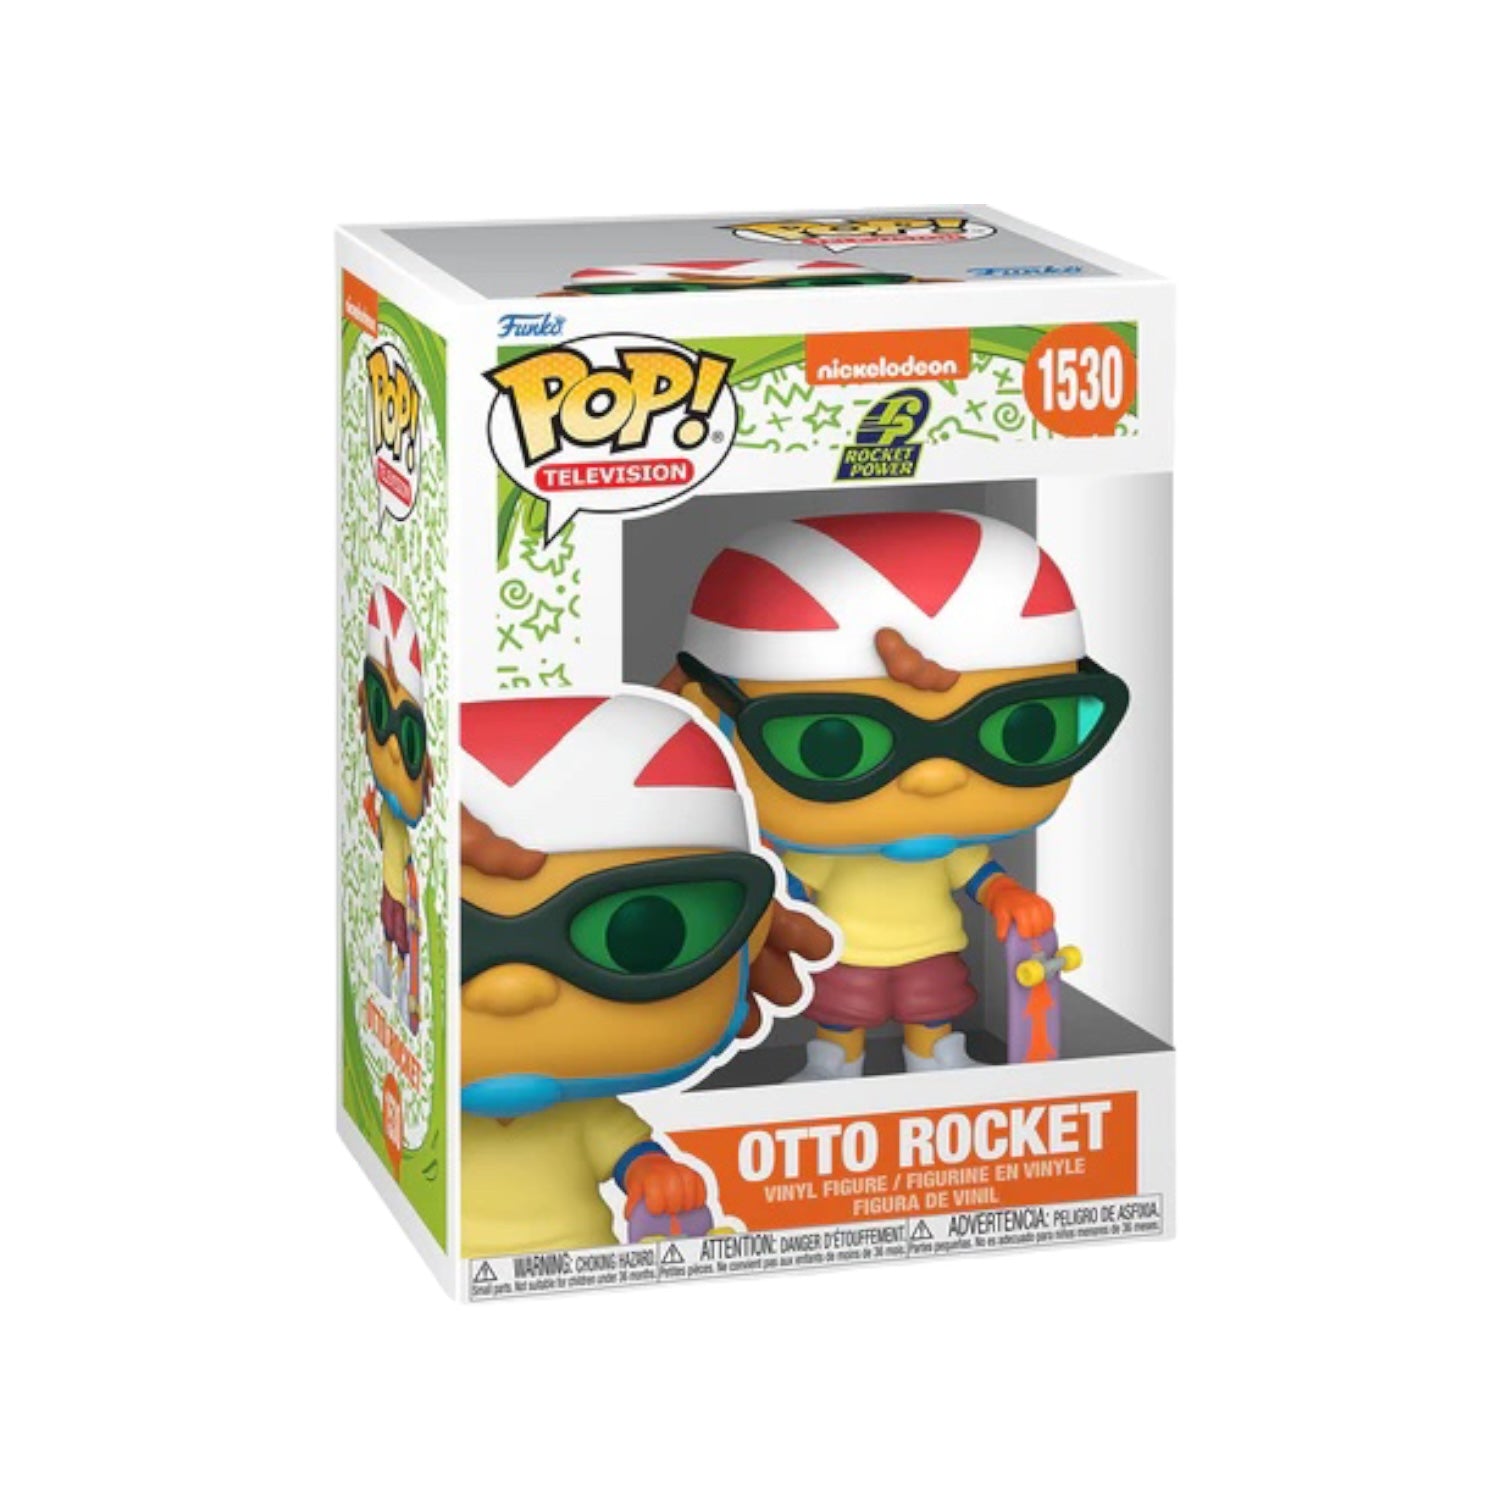 Otto Rocket #1530 Funko Pop! Nick Rewind - PREORDER